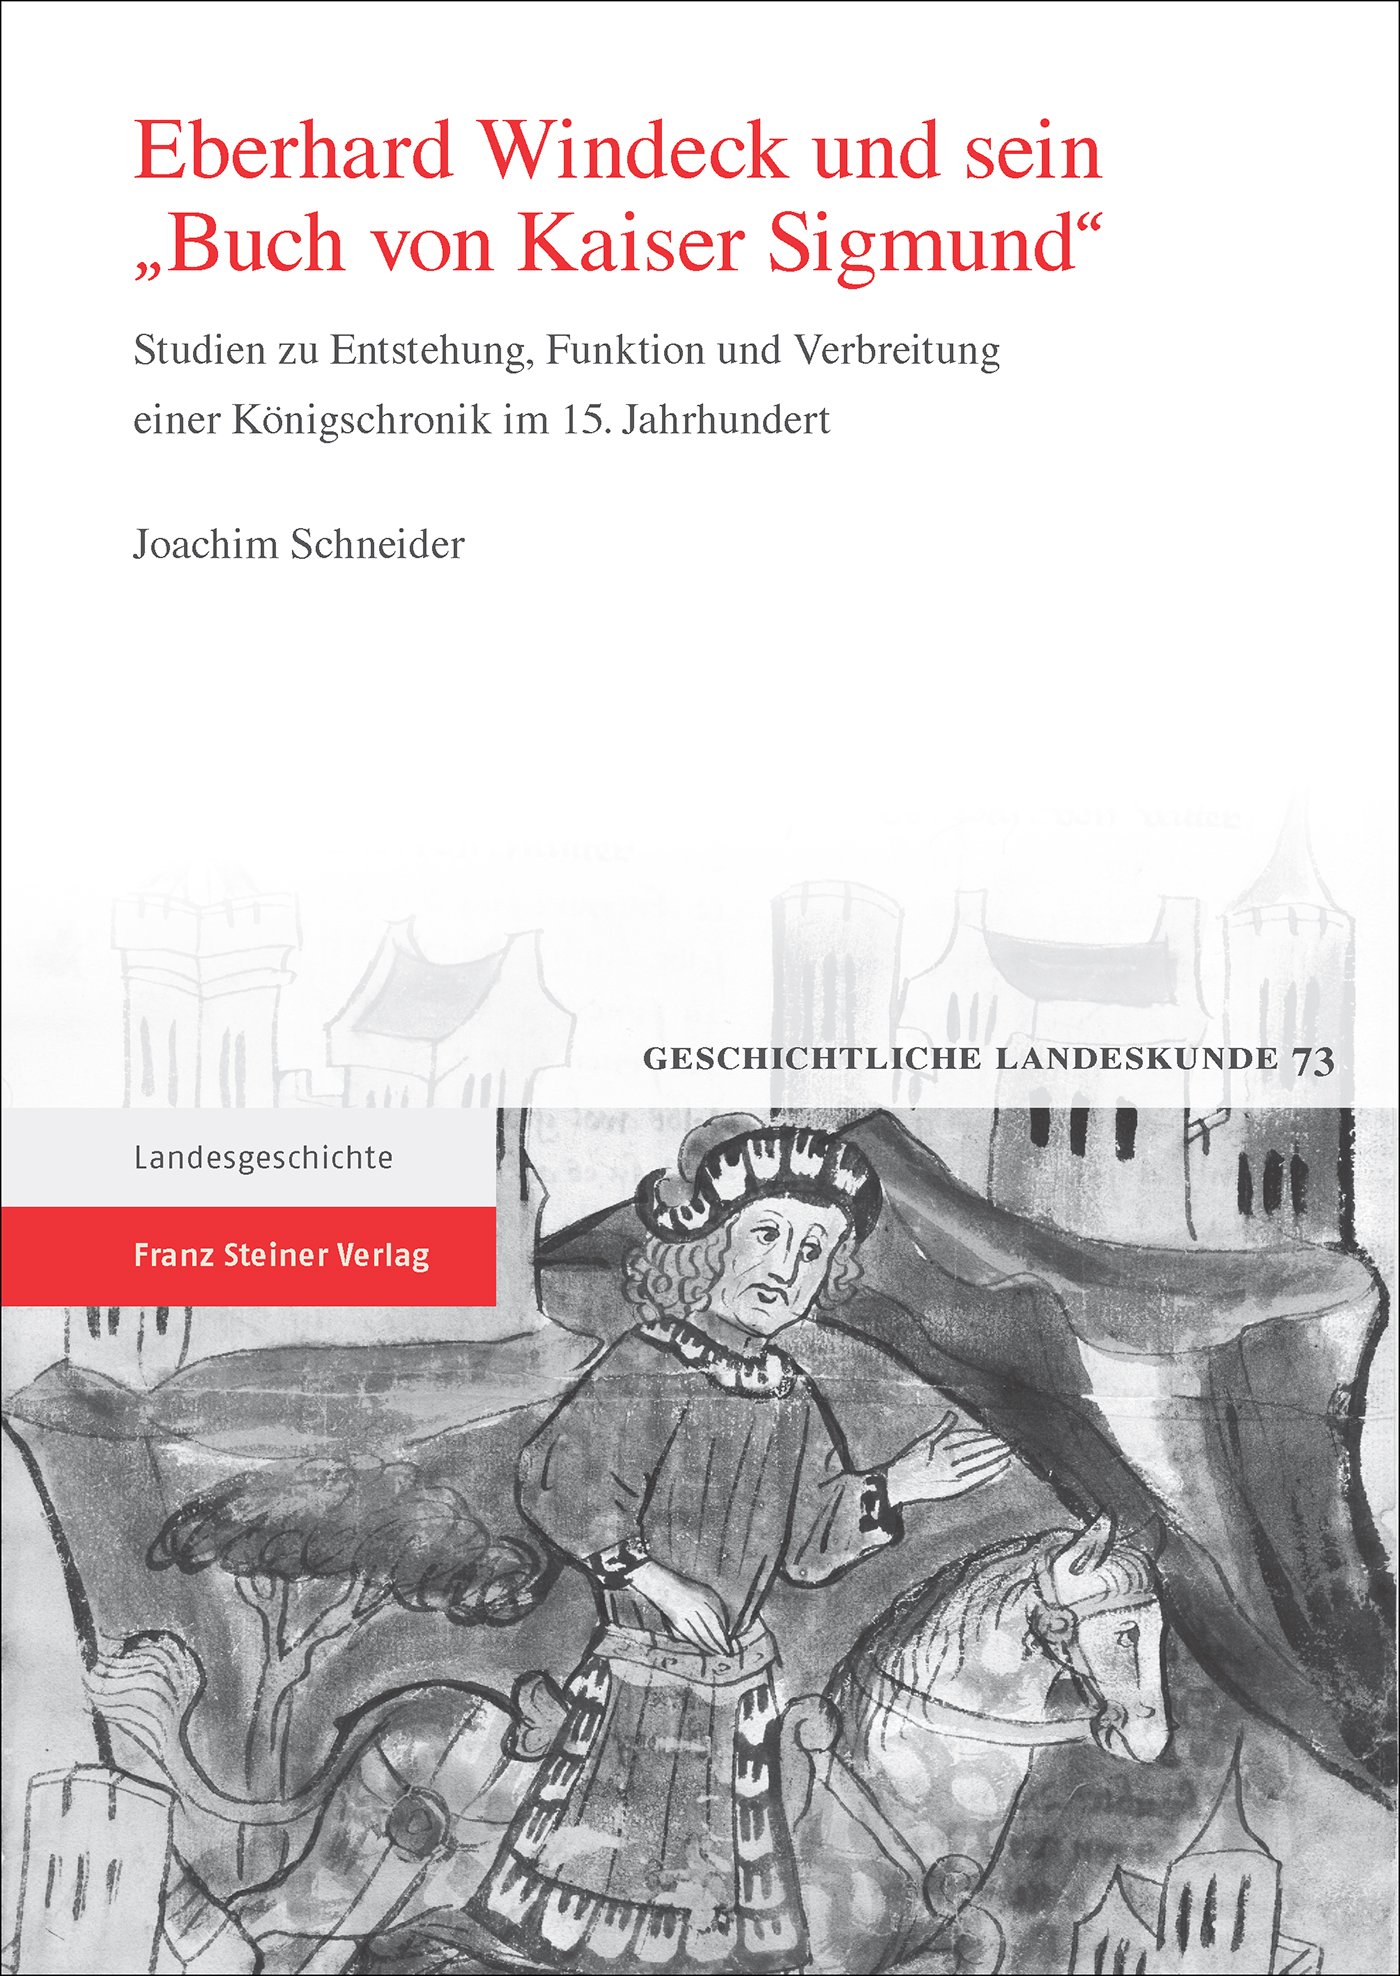 Eberhard Windeck und sein 'Buch von Kaiser Sigmund'